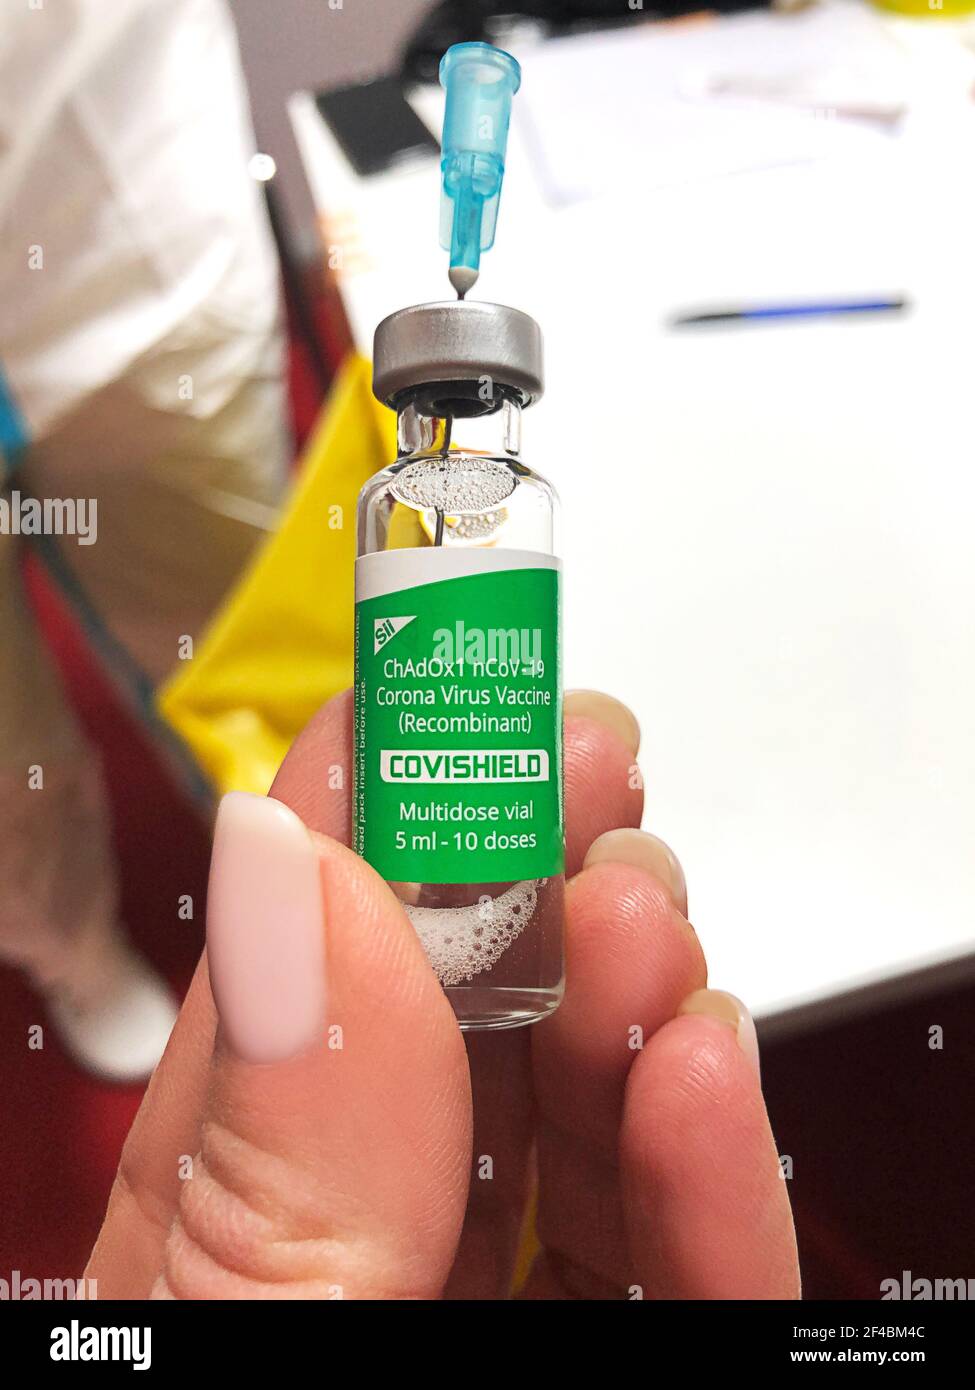 Kiev, Ucraina. 19 marzo 2021. Un vaccinatore detiene una dose di un vaccino COVID-19 di Oxford-AstraZeneca, chiamato COVISHIELD, durante la campagna di vaccinazione con il coronavirus (COVID-19) in un ospedale di Kiev. Covid-19 o concetto di vaccino del coronavirus. Primo piano. Foto Stock